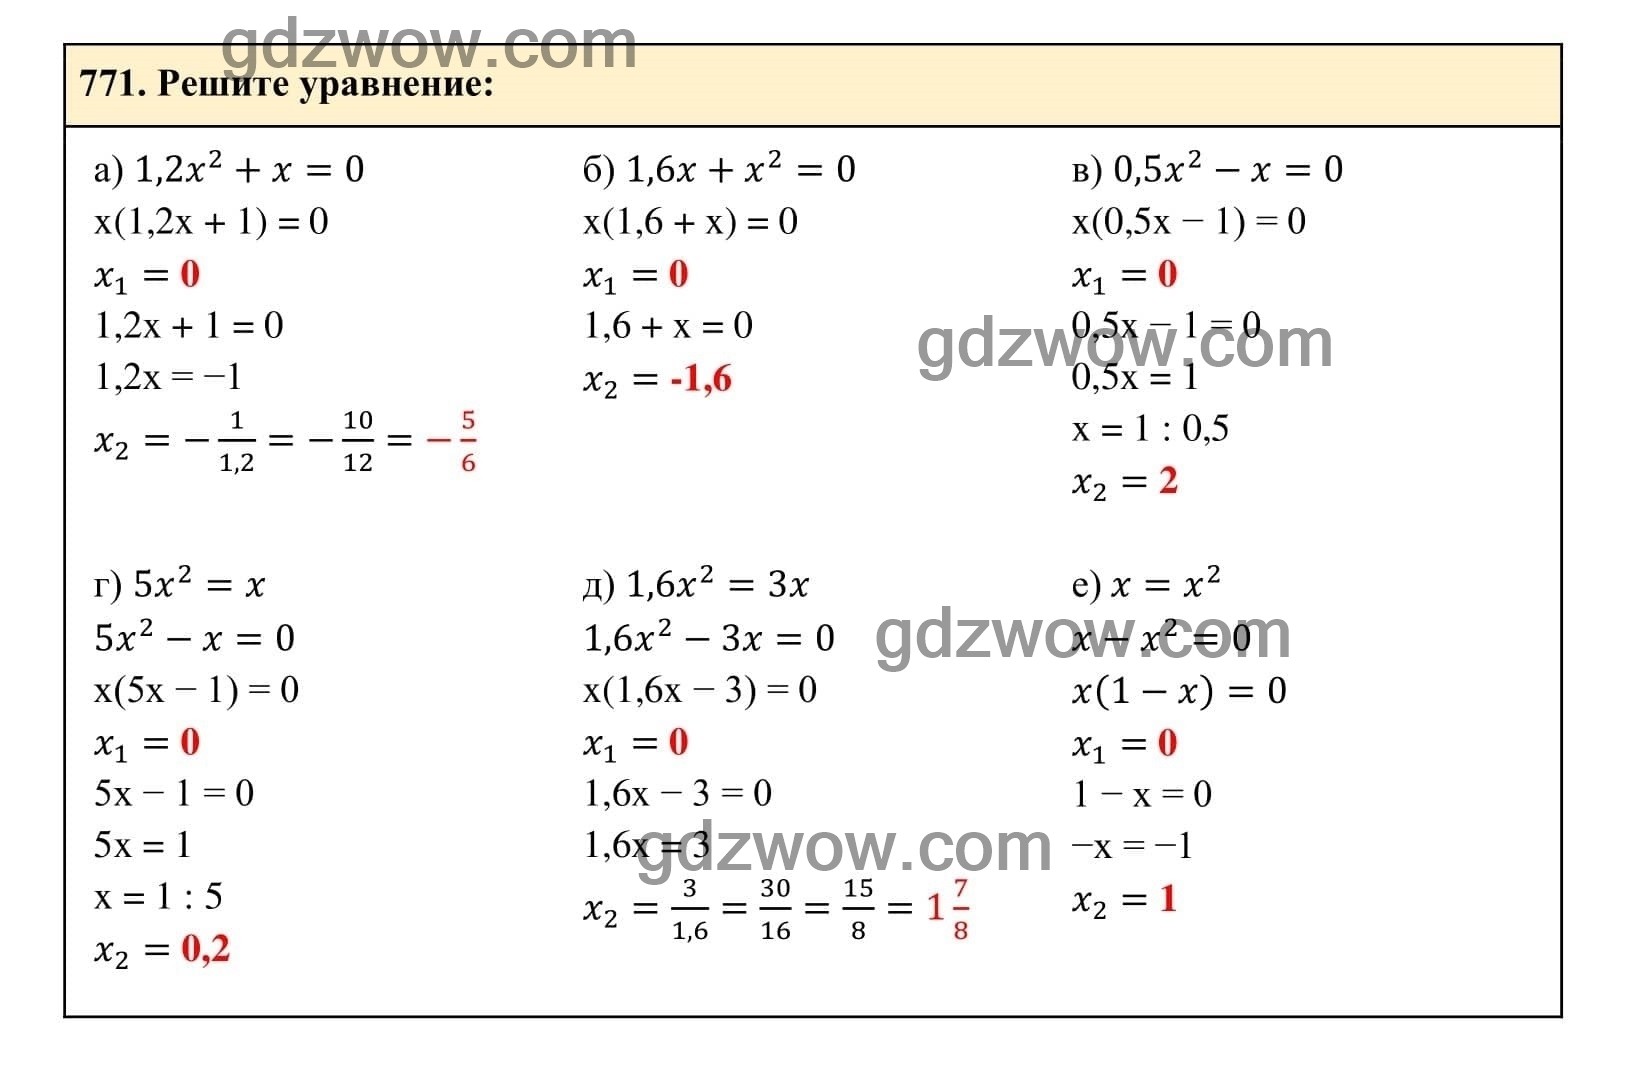 Упражнение 771 - ГДЗ по Алгебре 7 класс Учебник Макарычев (решебник) - GDZwow